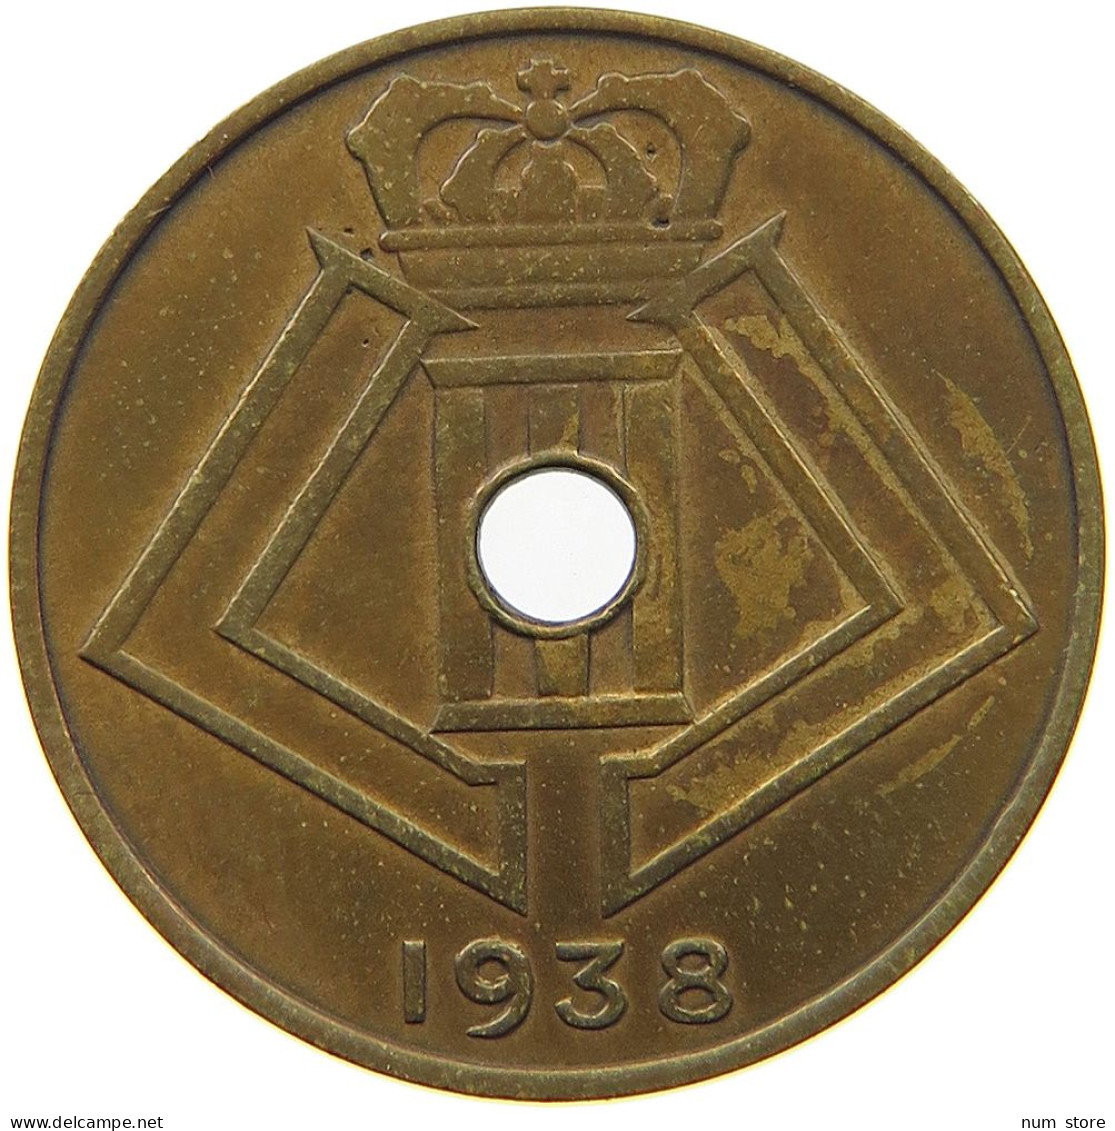 BELGIUM 10 CENTIMES 1938 10 CENTIMES PATTERN 1938 DUPR. 2653 B6 R2 SIMILOR #t081 0089 - 10 Cent